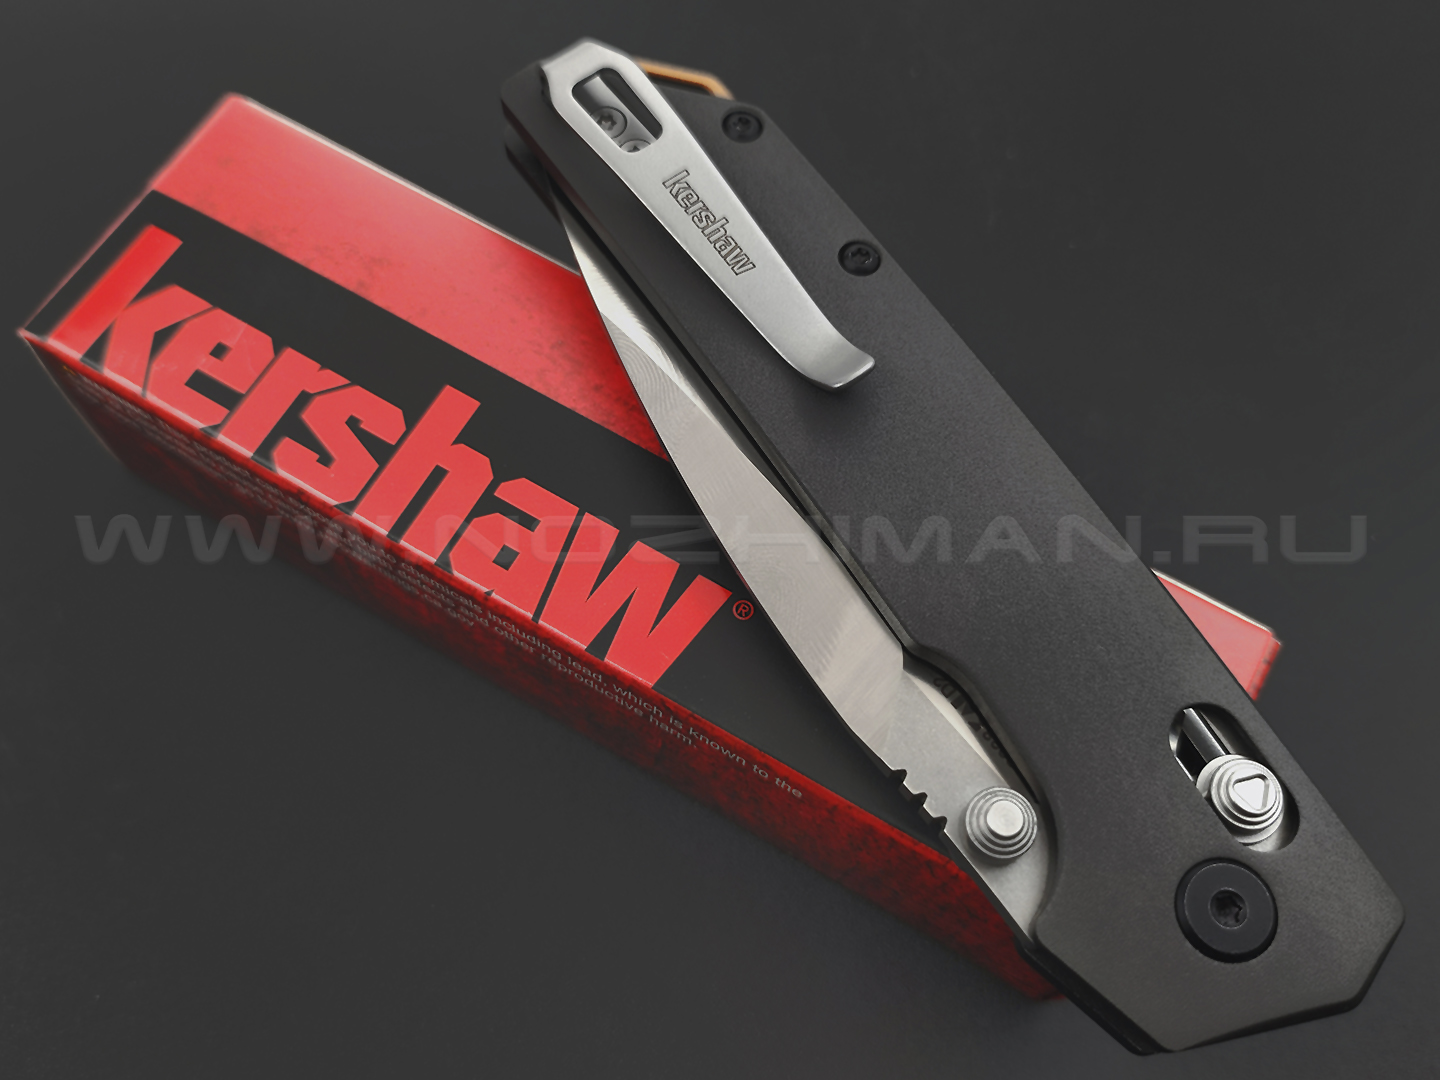 Нож Kershaw Iridium 2038 сталь D2, рукоять 6061-T6 Aluminum